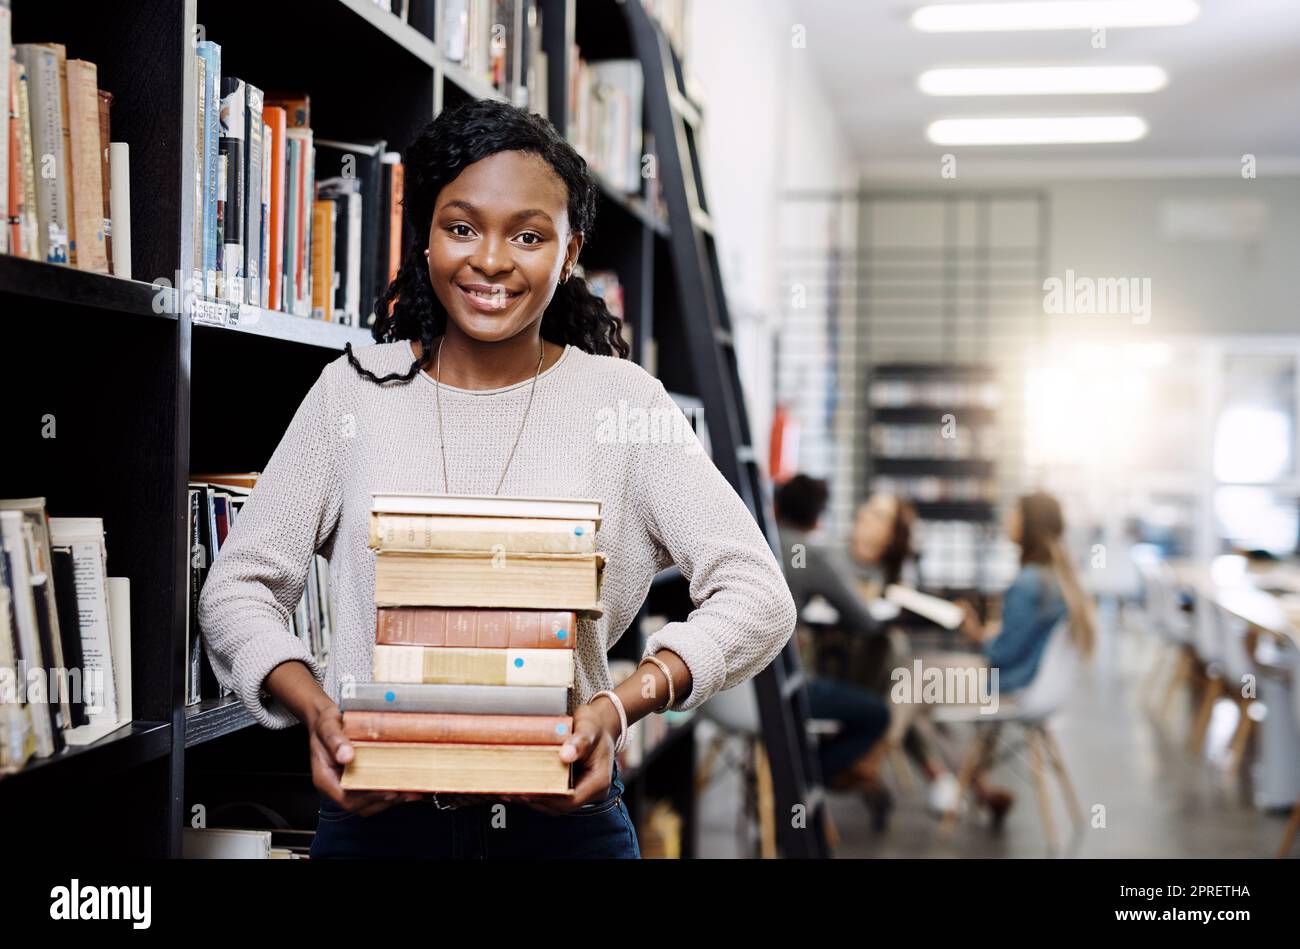 Viel zu lesen, viel zu lernen. Porträt einer glücklichen jungen Frau, die Bücher in einer Bibliothek am College trägt. Stockfoto